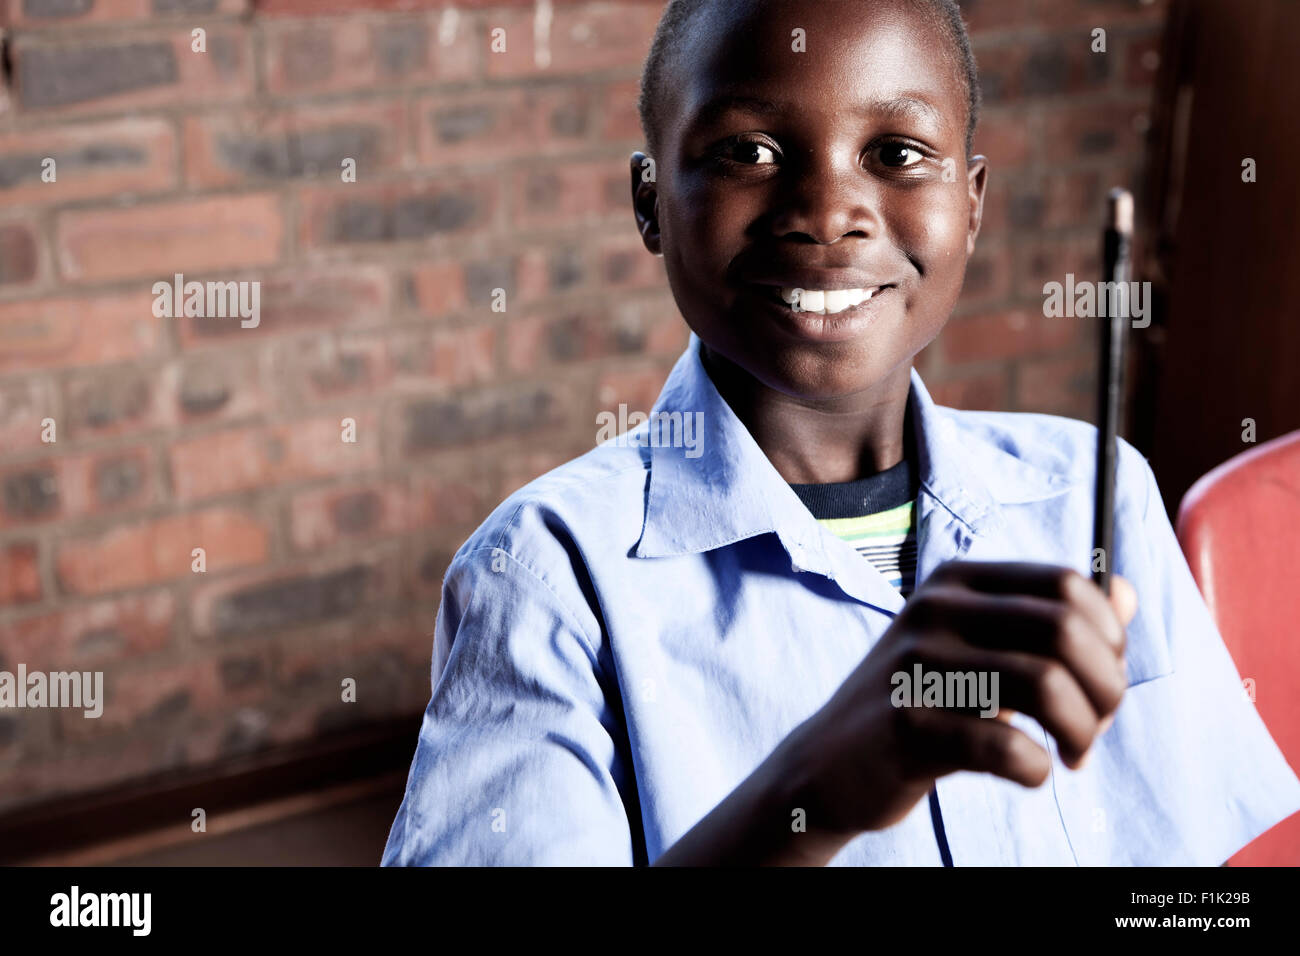 Homme étudiant africain assis à un bureau, smiling at camera Banque D'Images